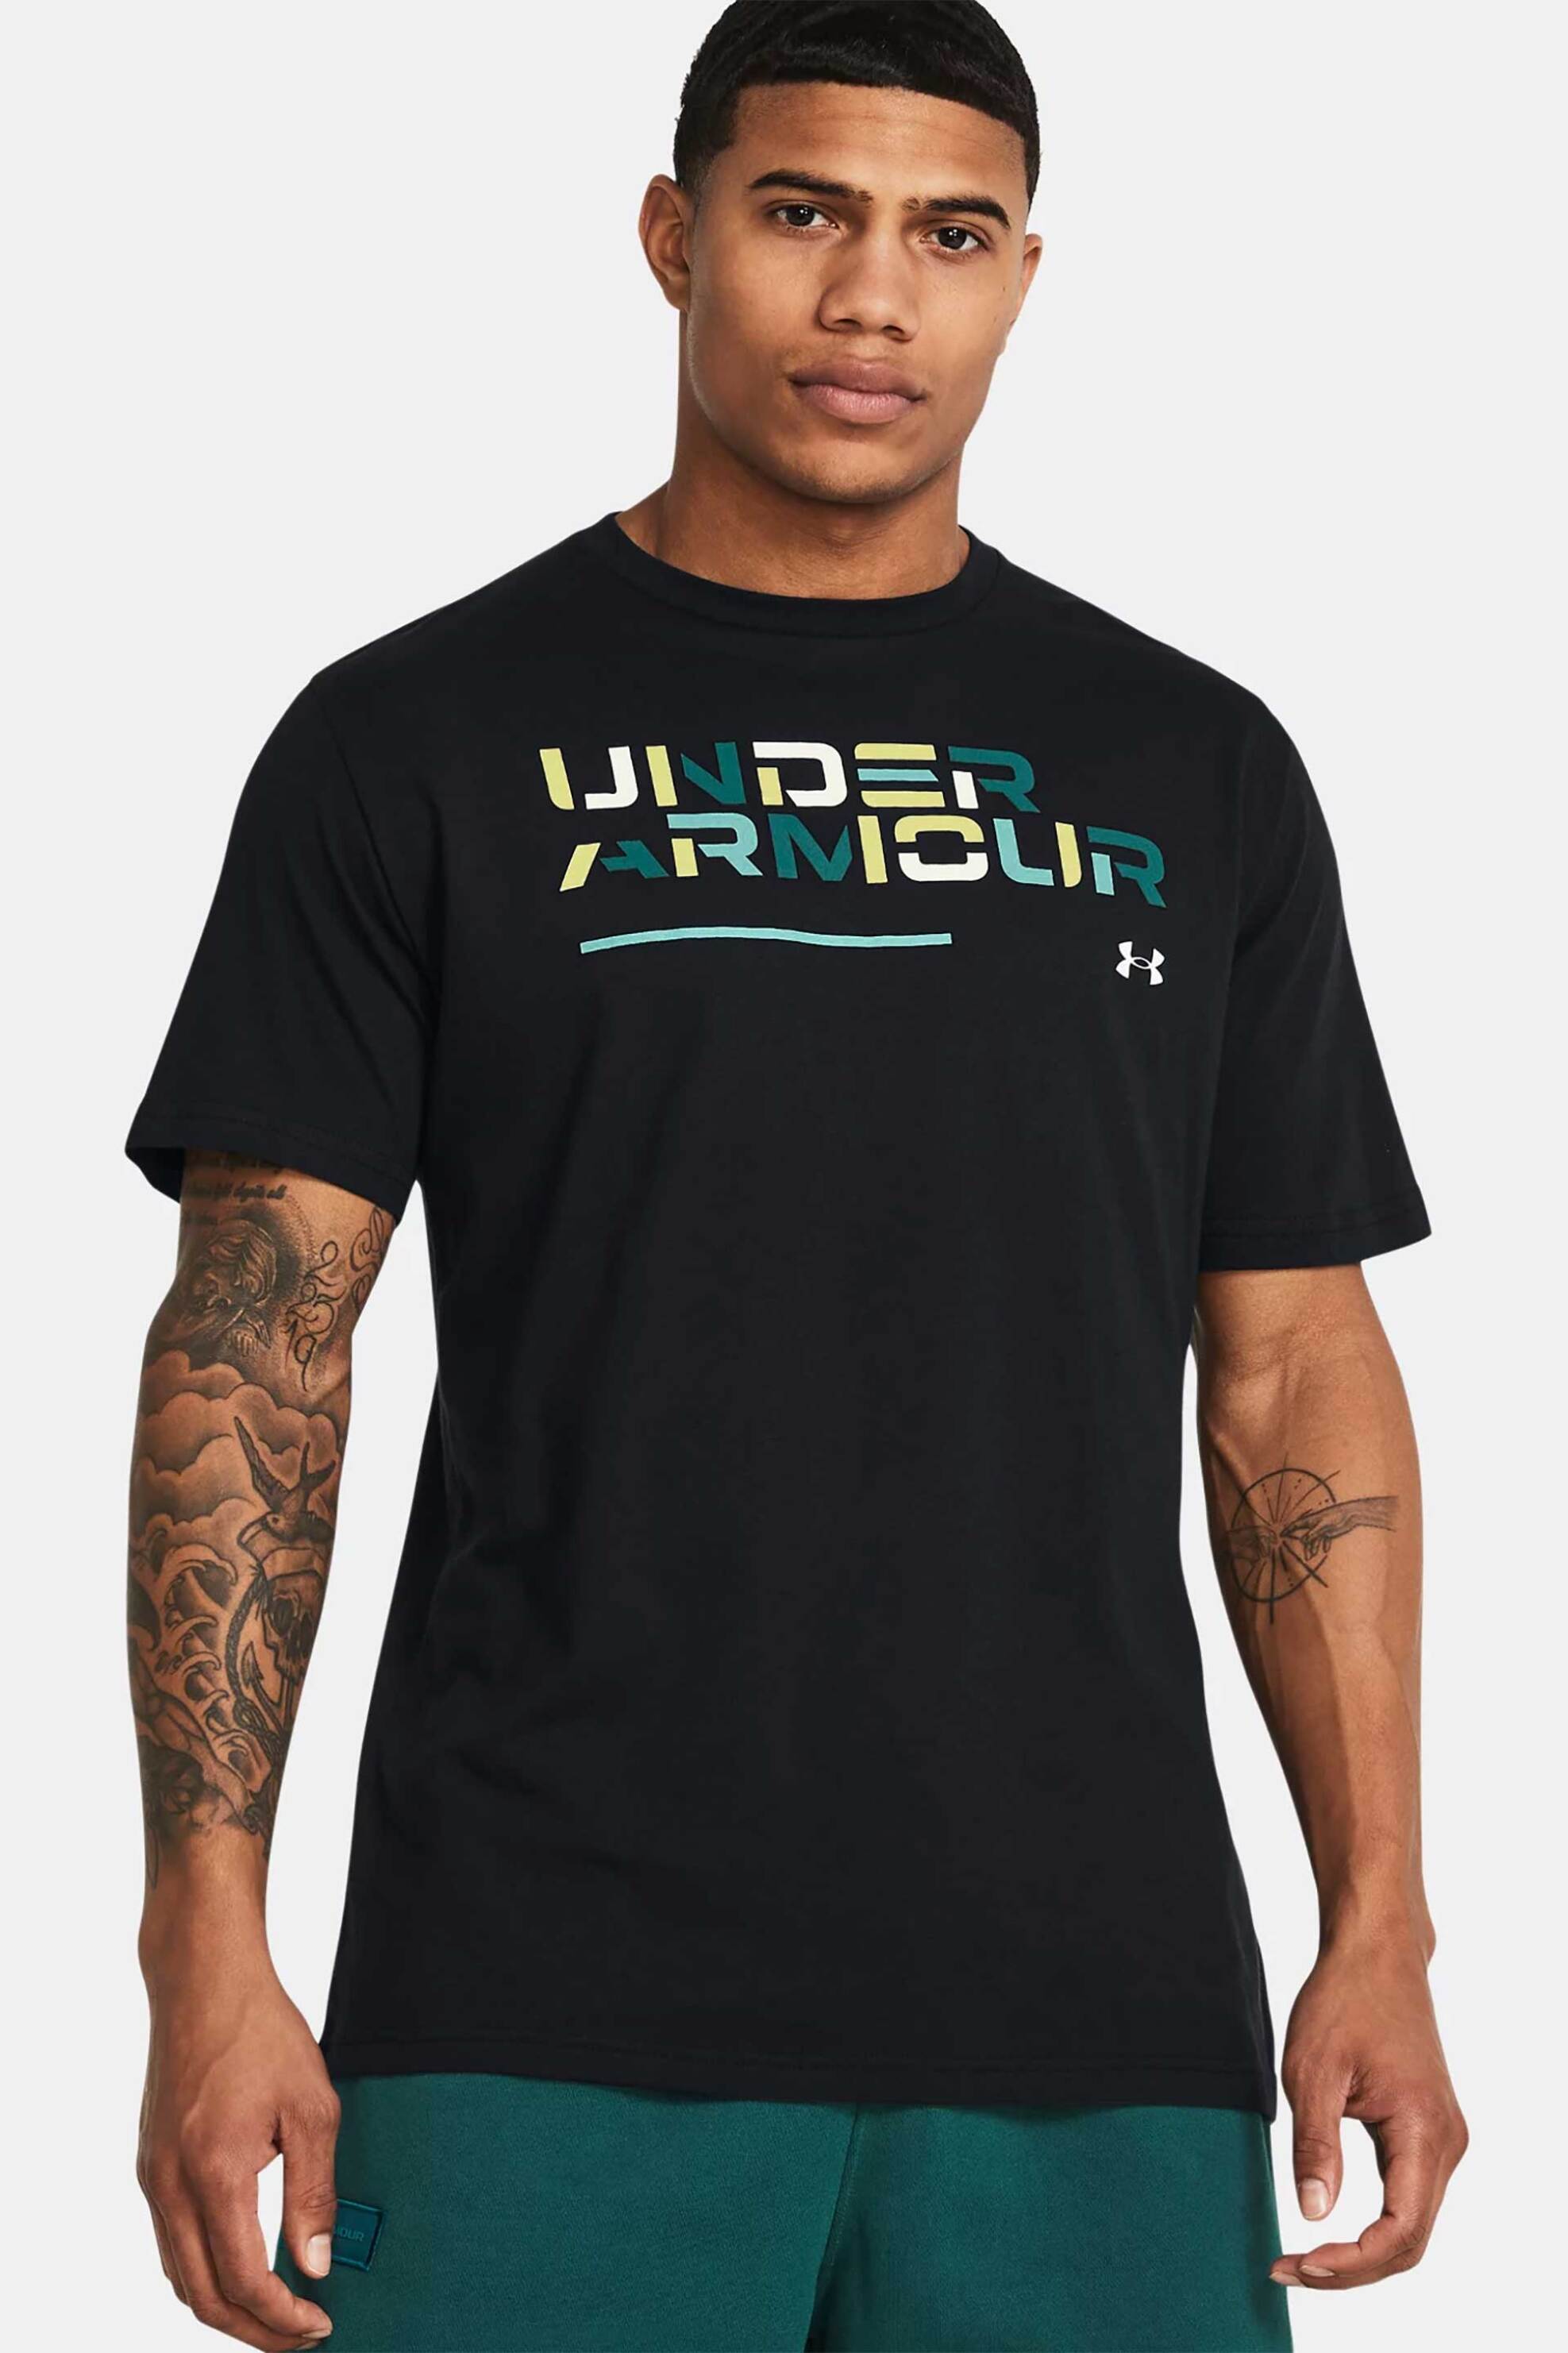 Ανδρική Μόδα > Ανδρικά Αθλητικά > Ανδρικά Αθλητικά Ρούχα > Αθλητικές Μπλούζες > Ανδρικά Αθλητικά T-Shirts Under Armour ανδρικό T-shirt με colourblocked logo print Loose Fit - 1382829 Μαύρο